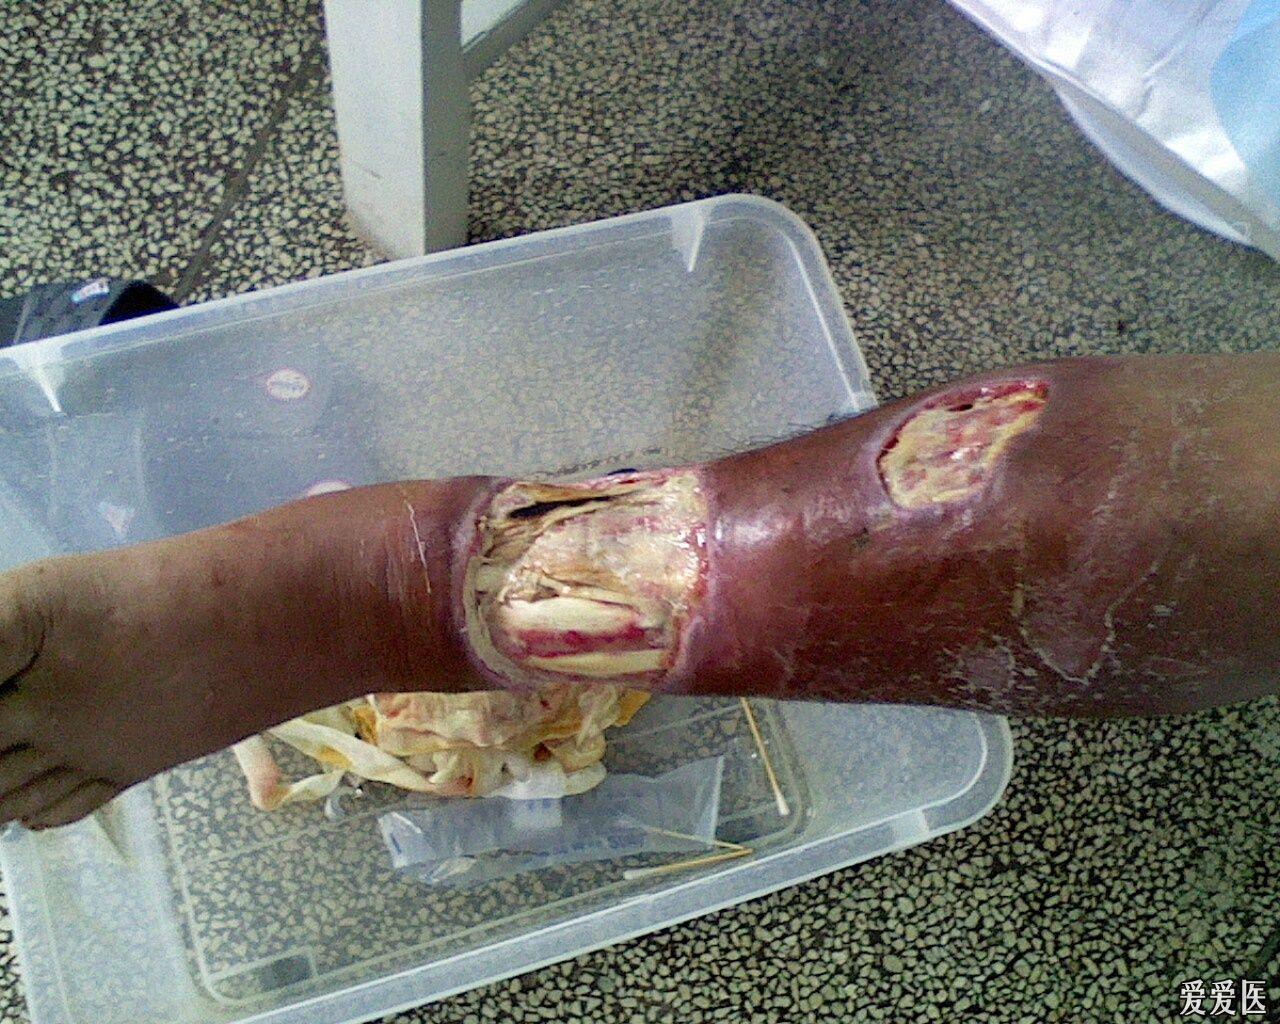 蛇咬伤导致左胫前皮肤组织缺损感染